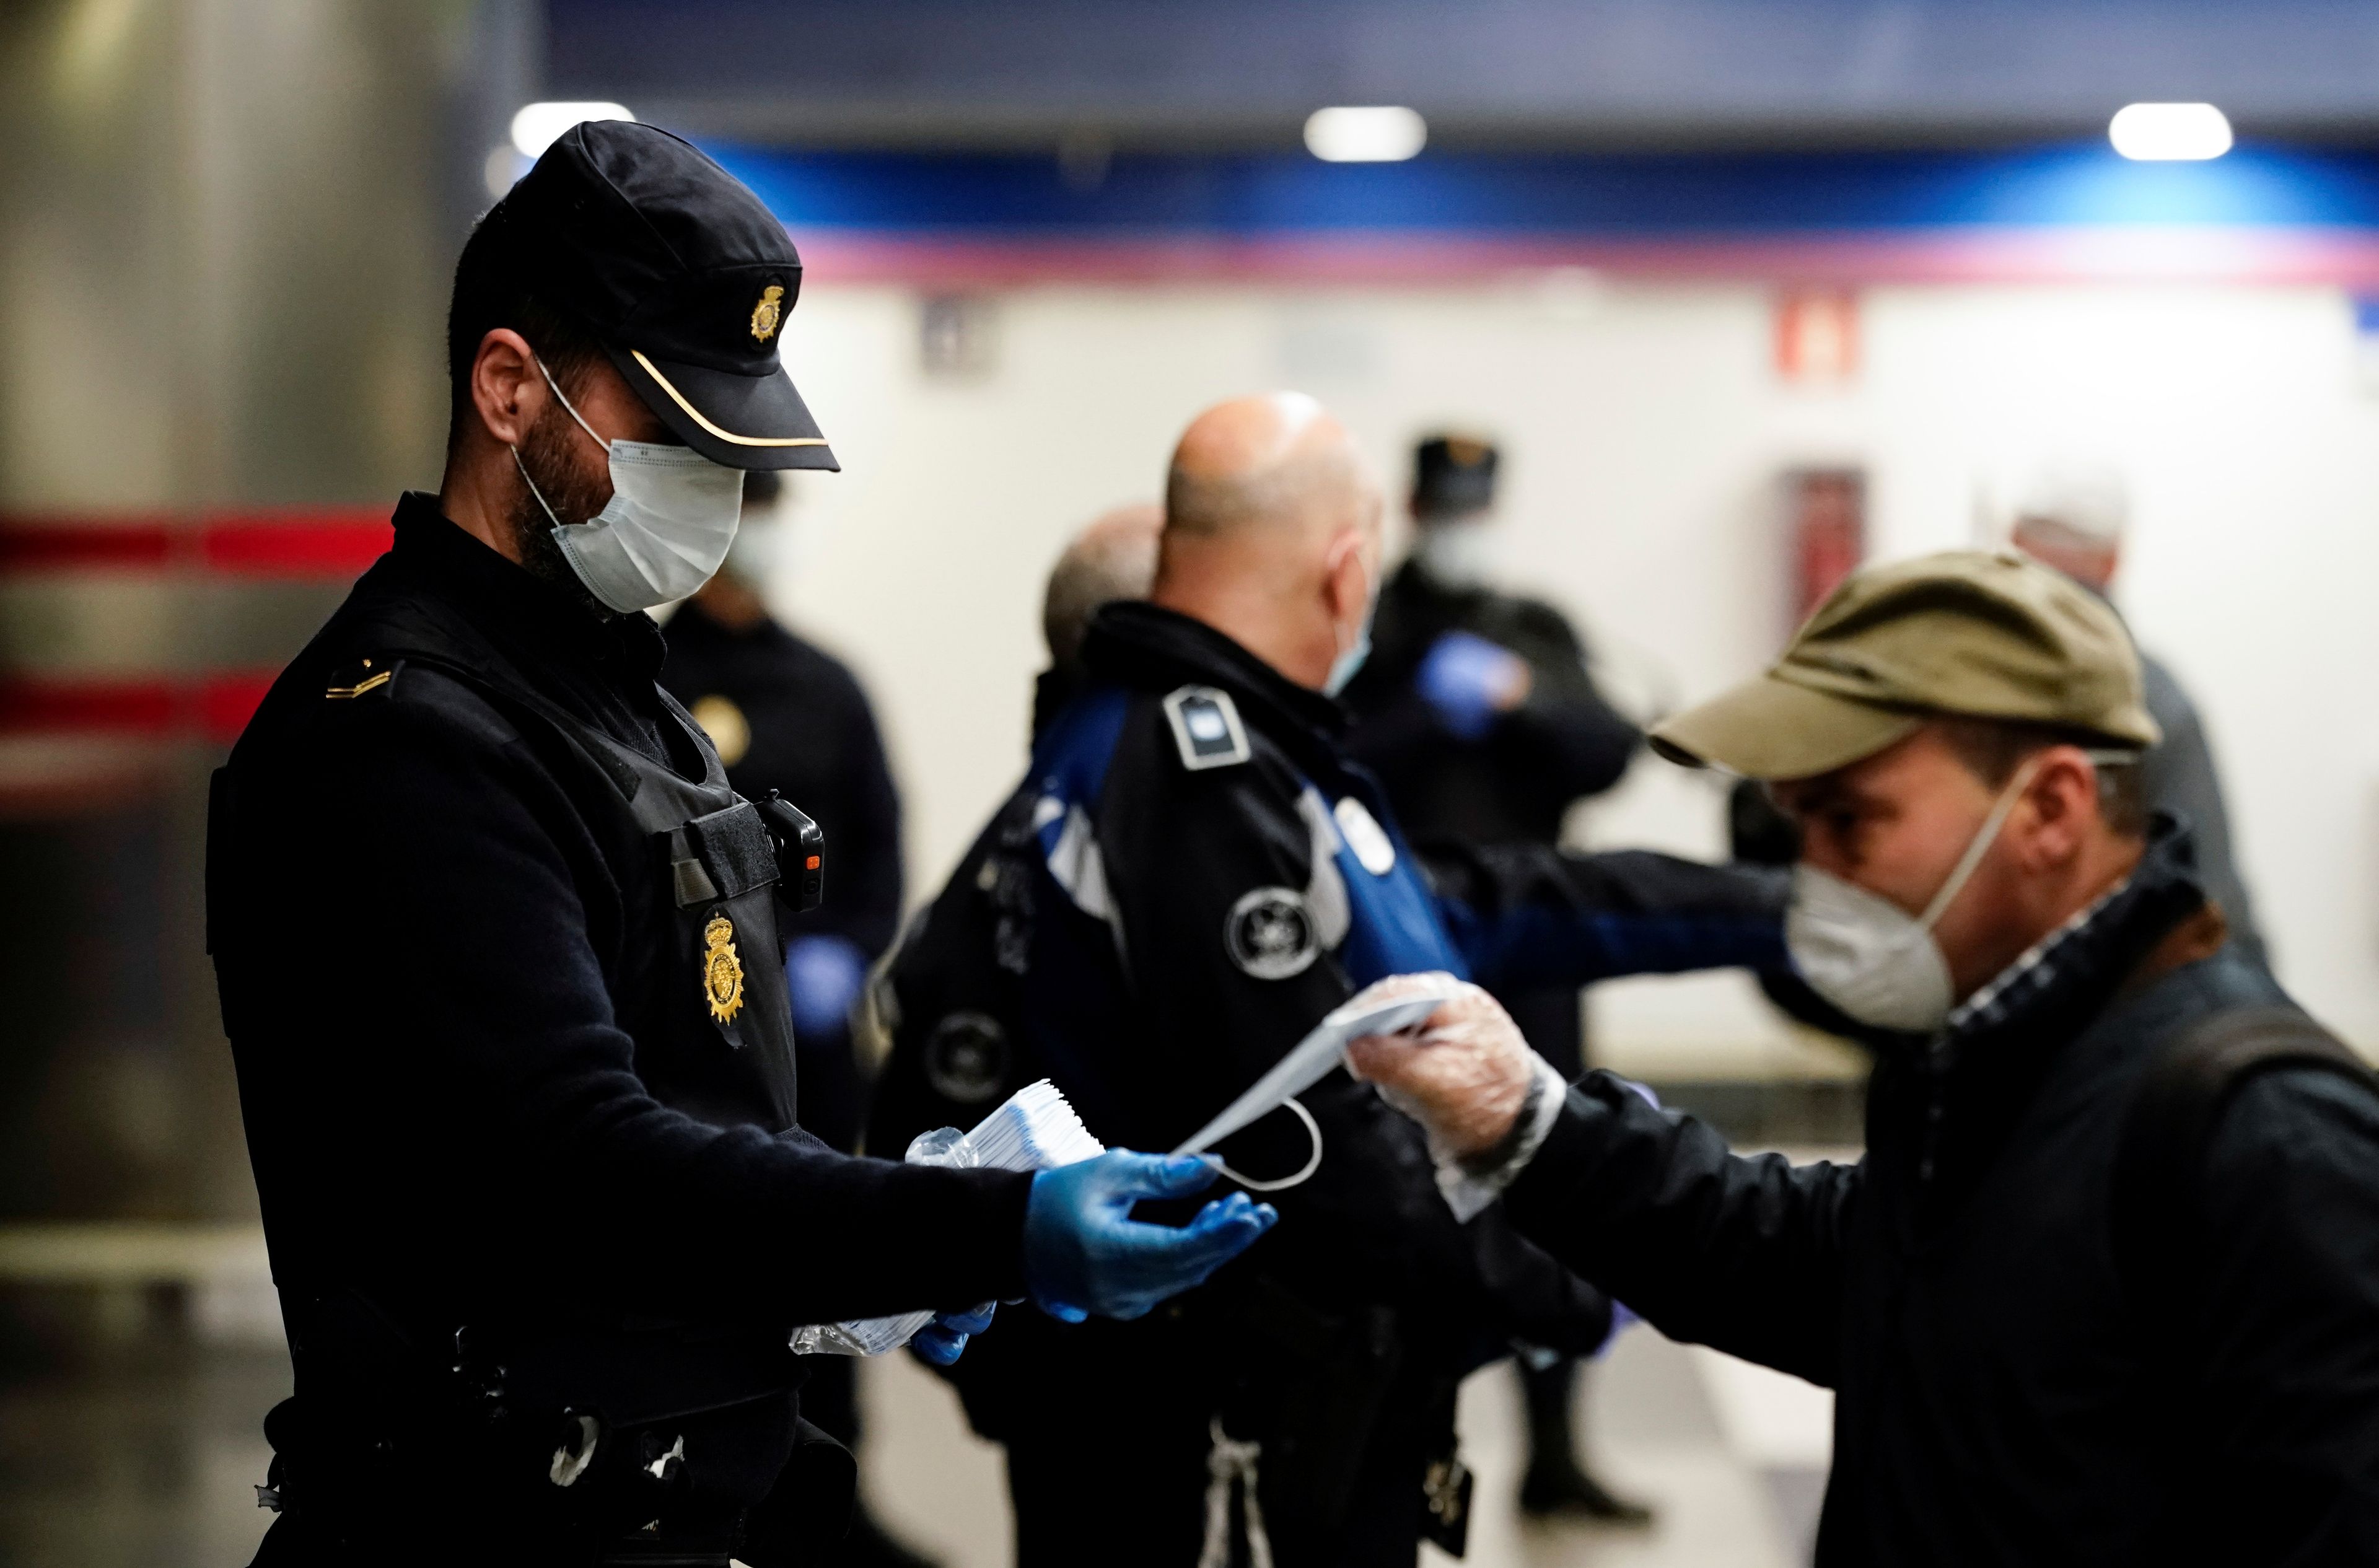 Un policía reparte mascarillas higiénicas en una estación de Metro de Madrid.